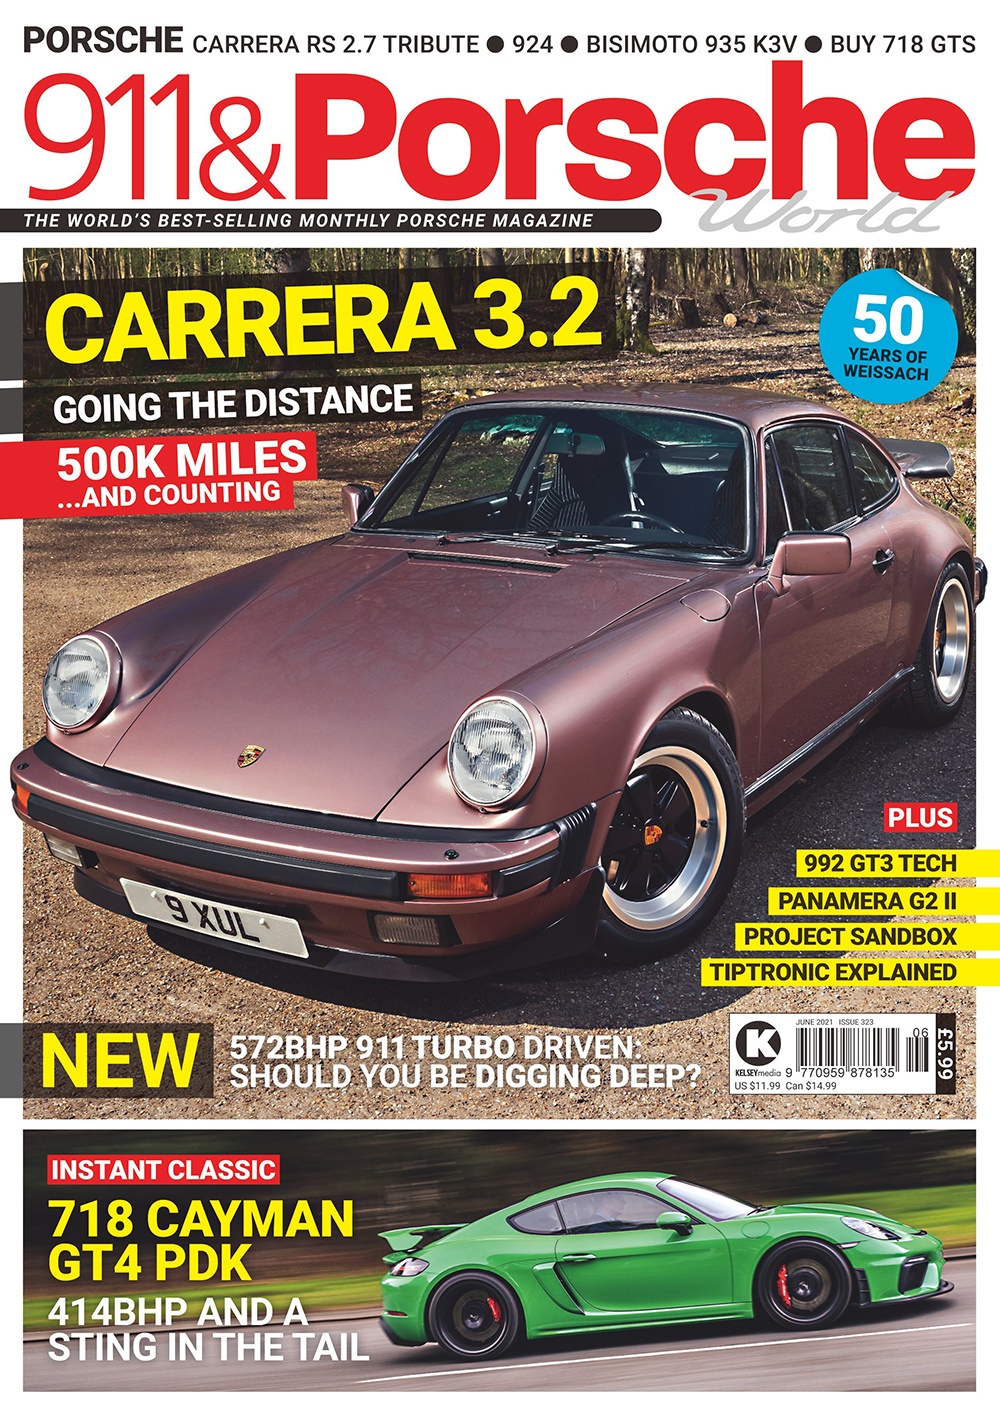 911 & Porsche World Issue 323 - June 2021